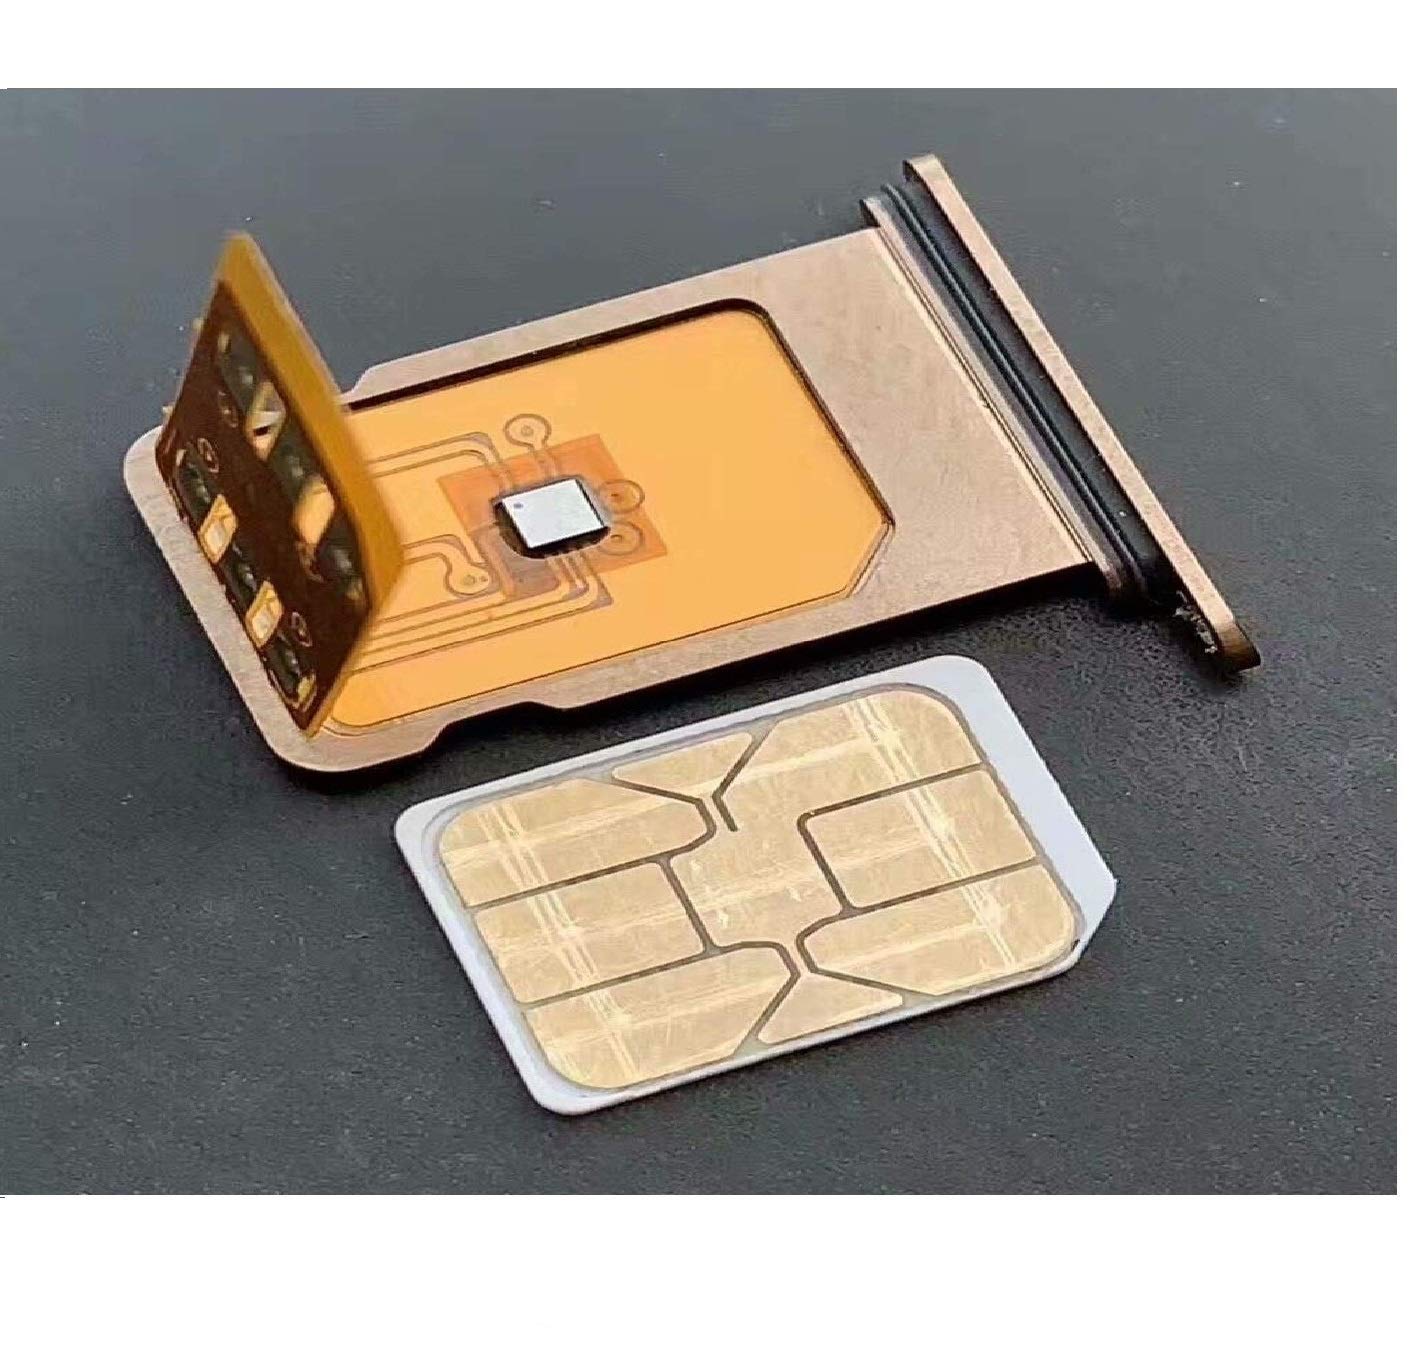 iPhone unlock card